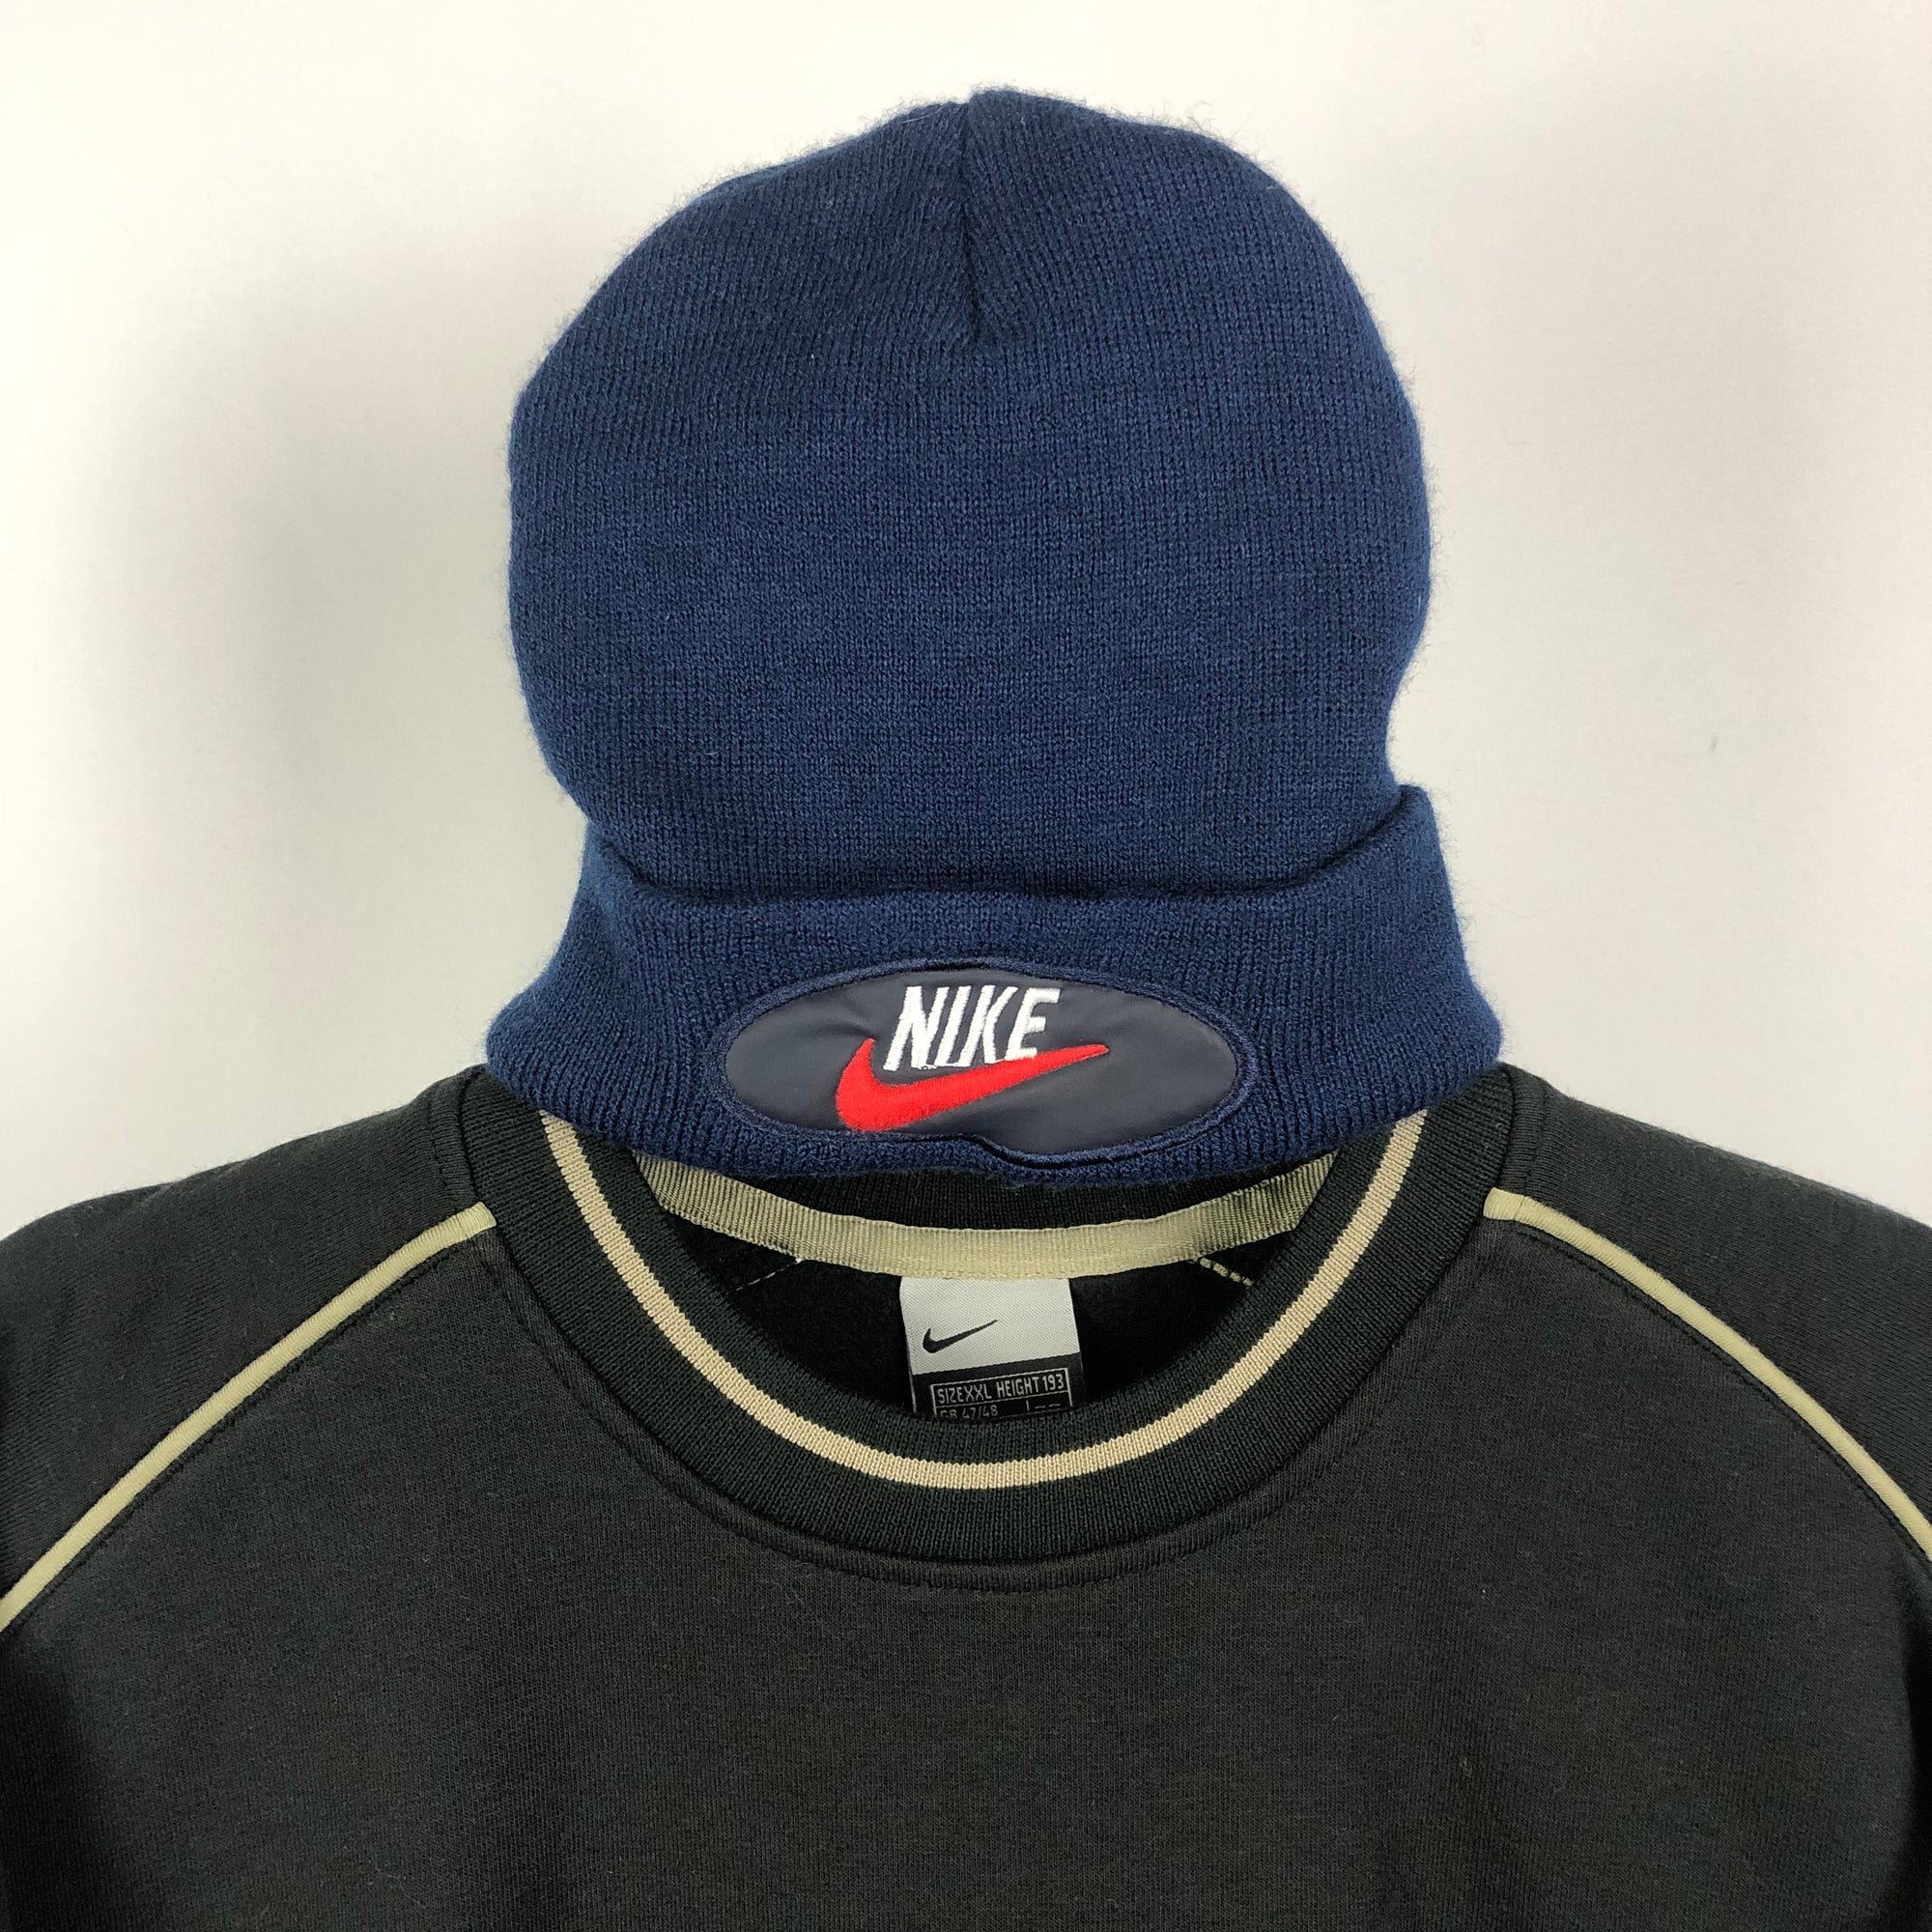 Vintage Nike Navy/Red Beanie Hat